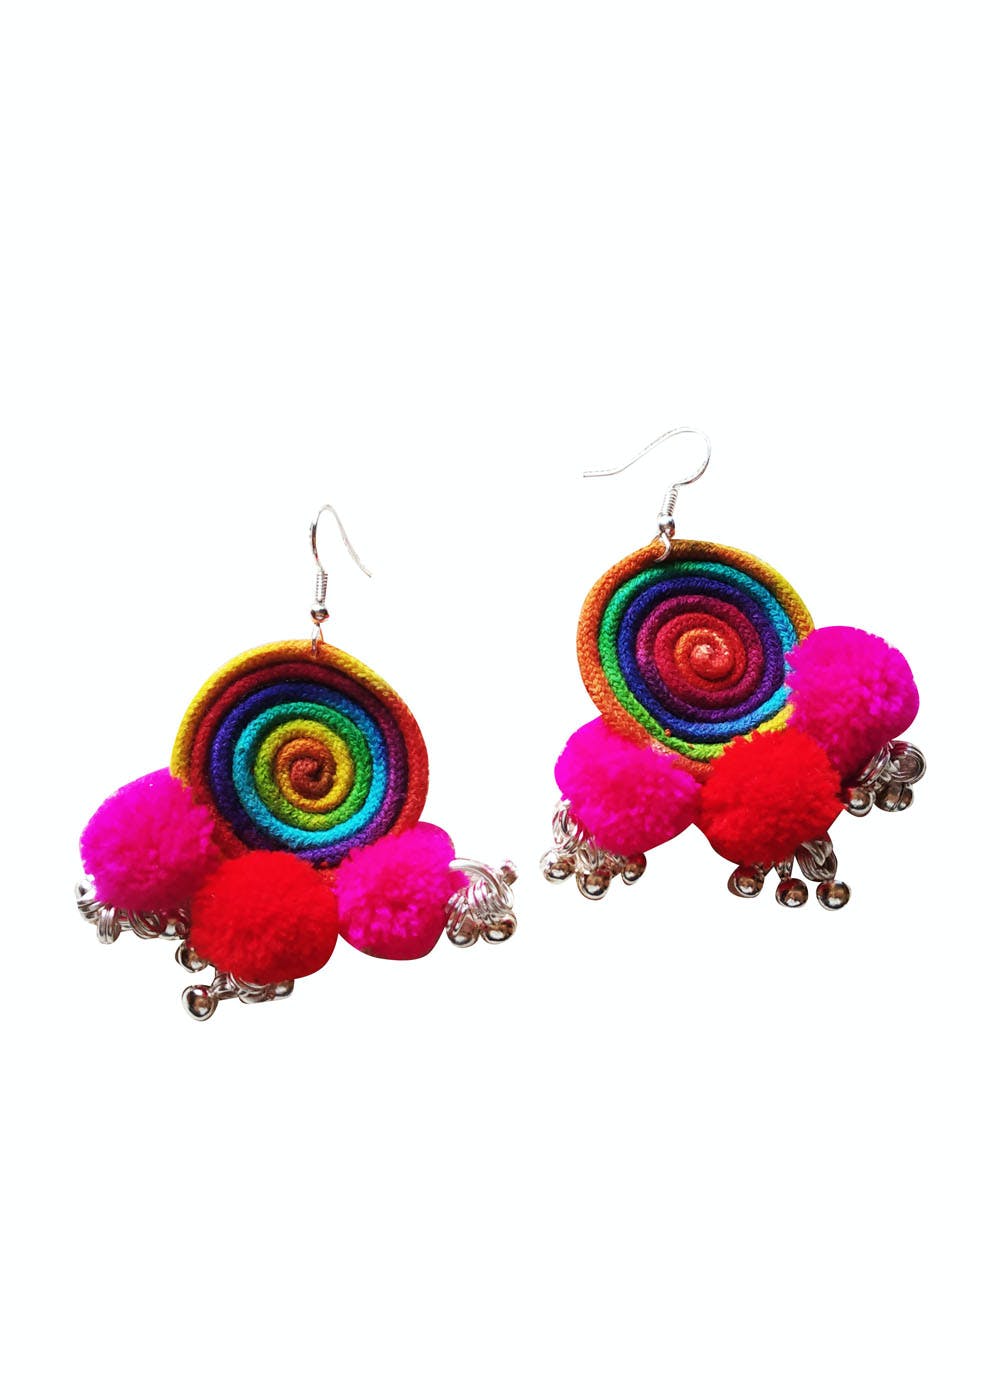 Elegant hoops & pink tassels! Large earrings, tassel pom pom pom pom  earrings fancy Bohemian style